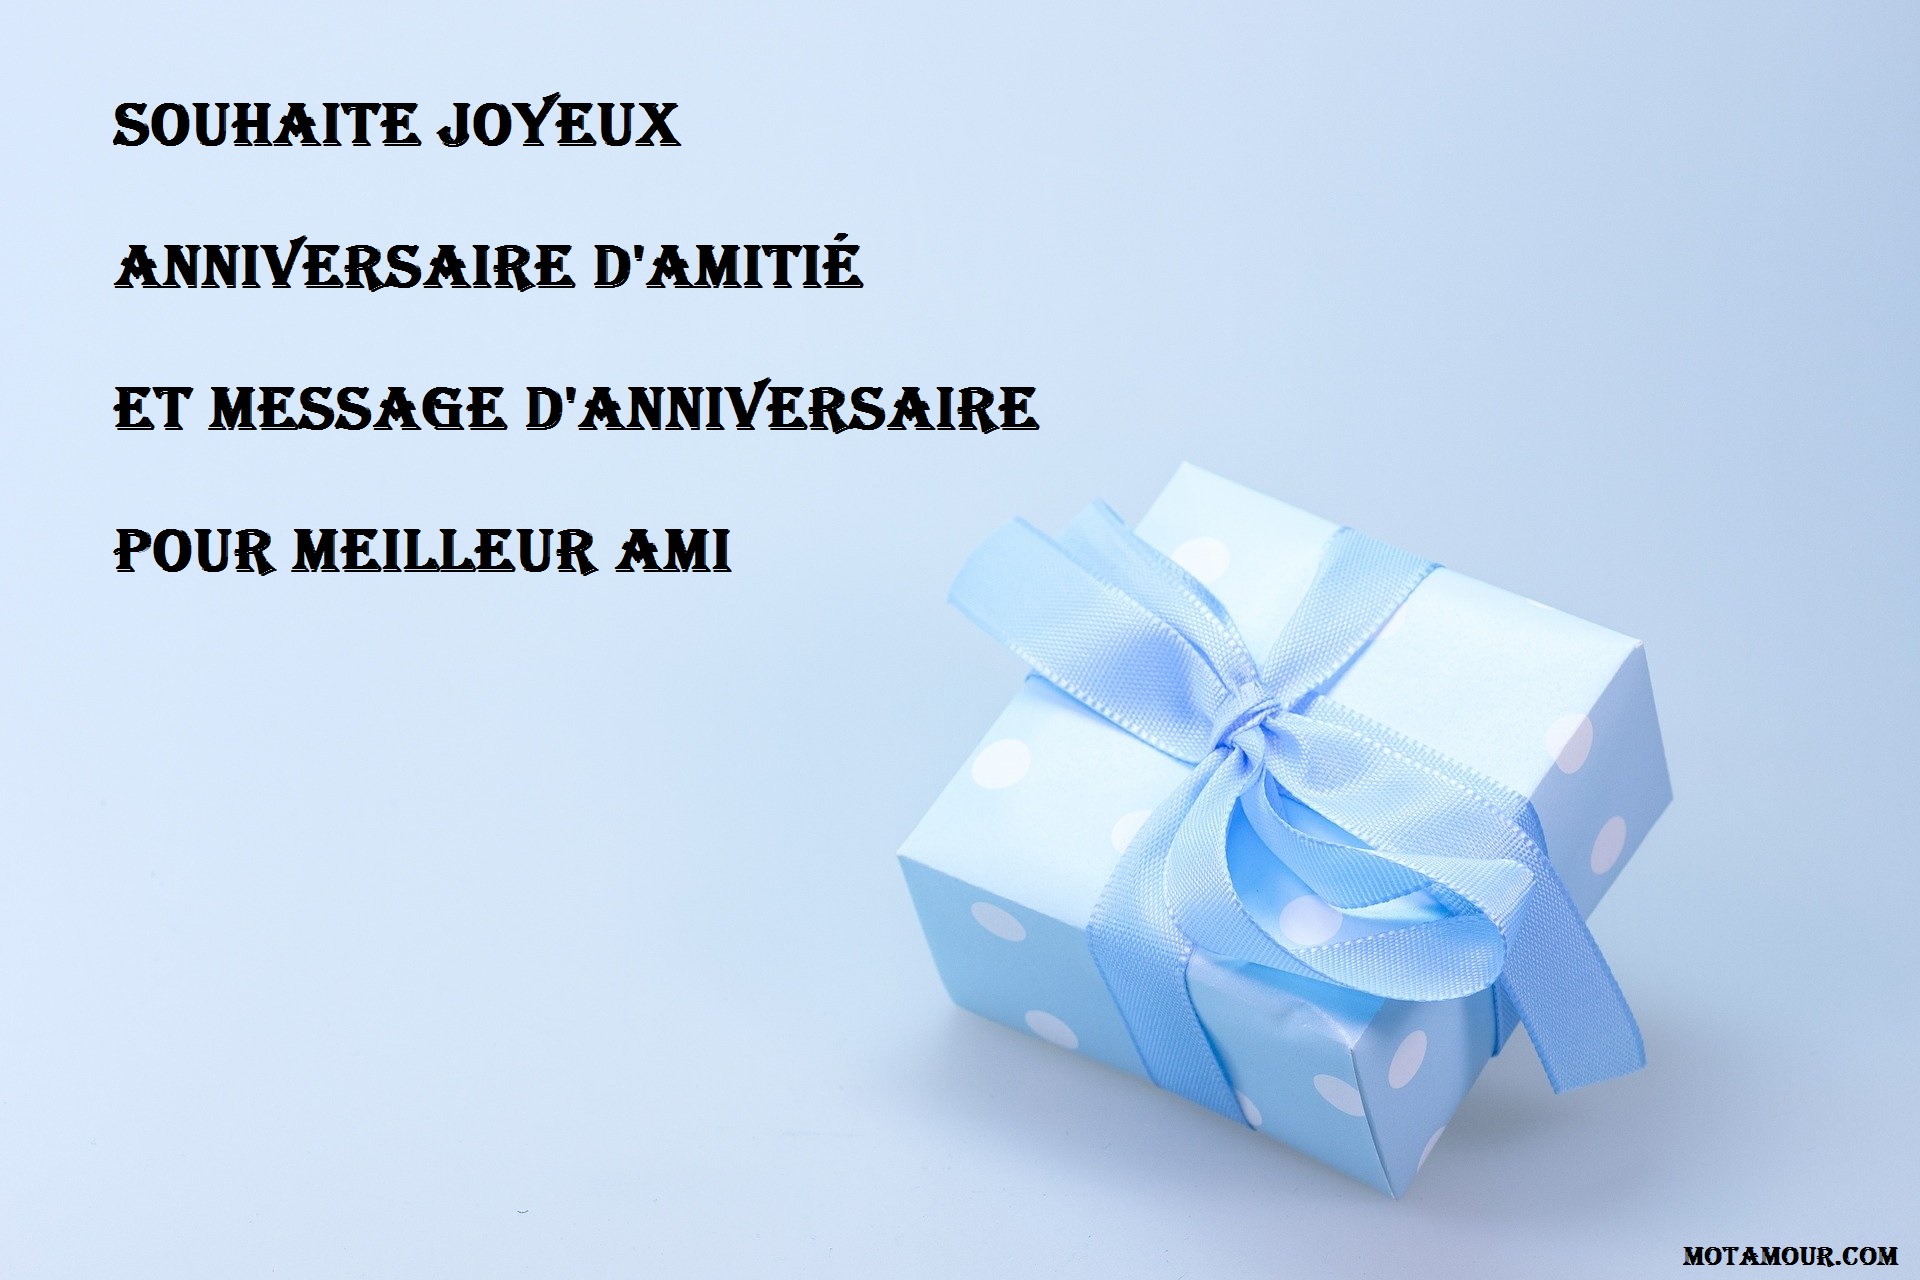 150 Souhaite Joyeux Anniversaire D Amitie Et Message D Anniversaire Pour Meilleur Ami